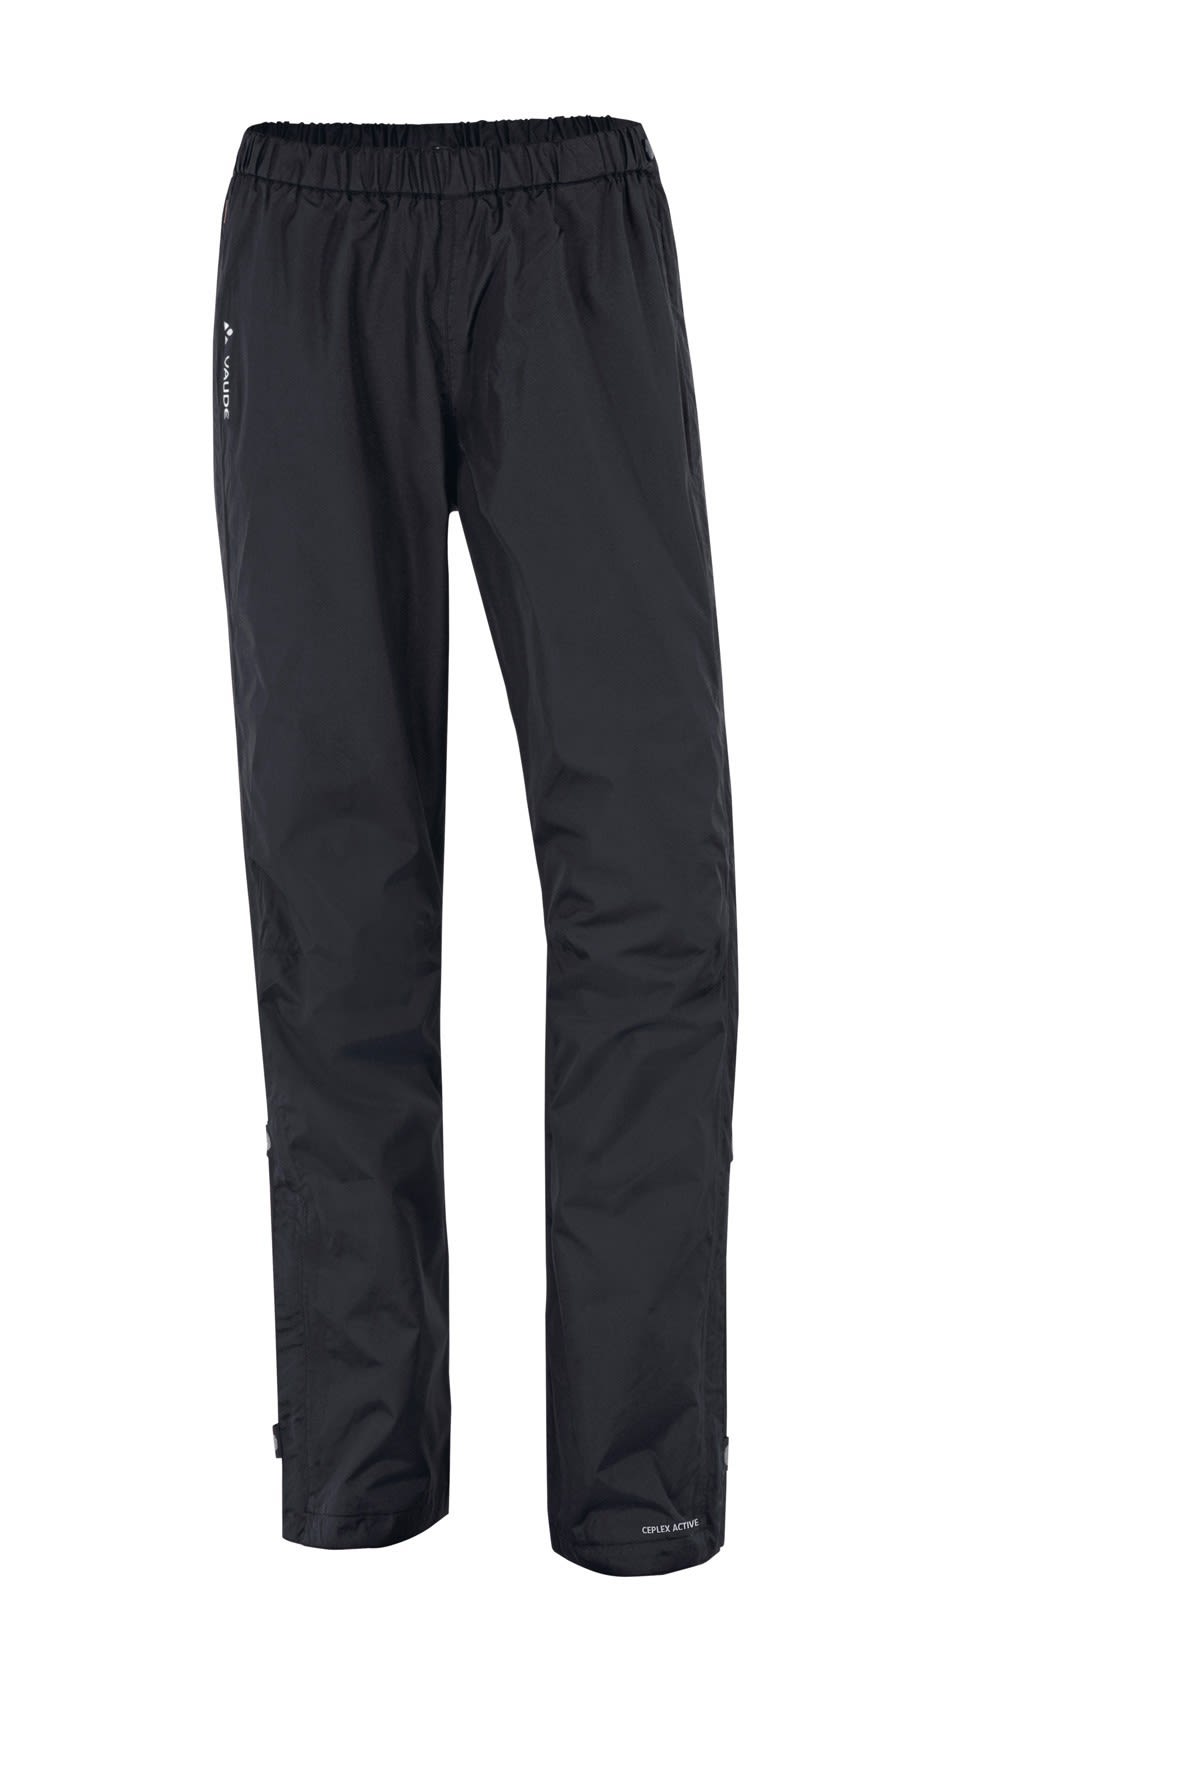 Vaude Fluid Full-Zip Pants Schwarz- Female Hosen- Grsse 36 - Farbe Black unter Vaude